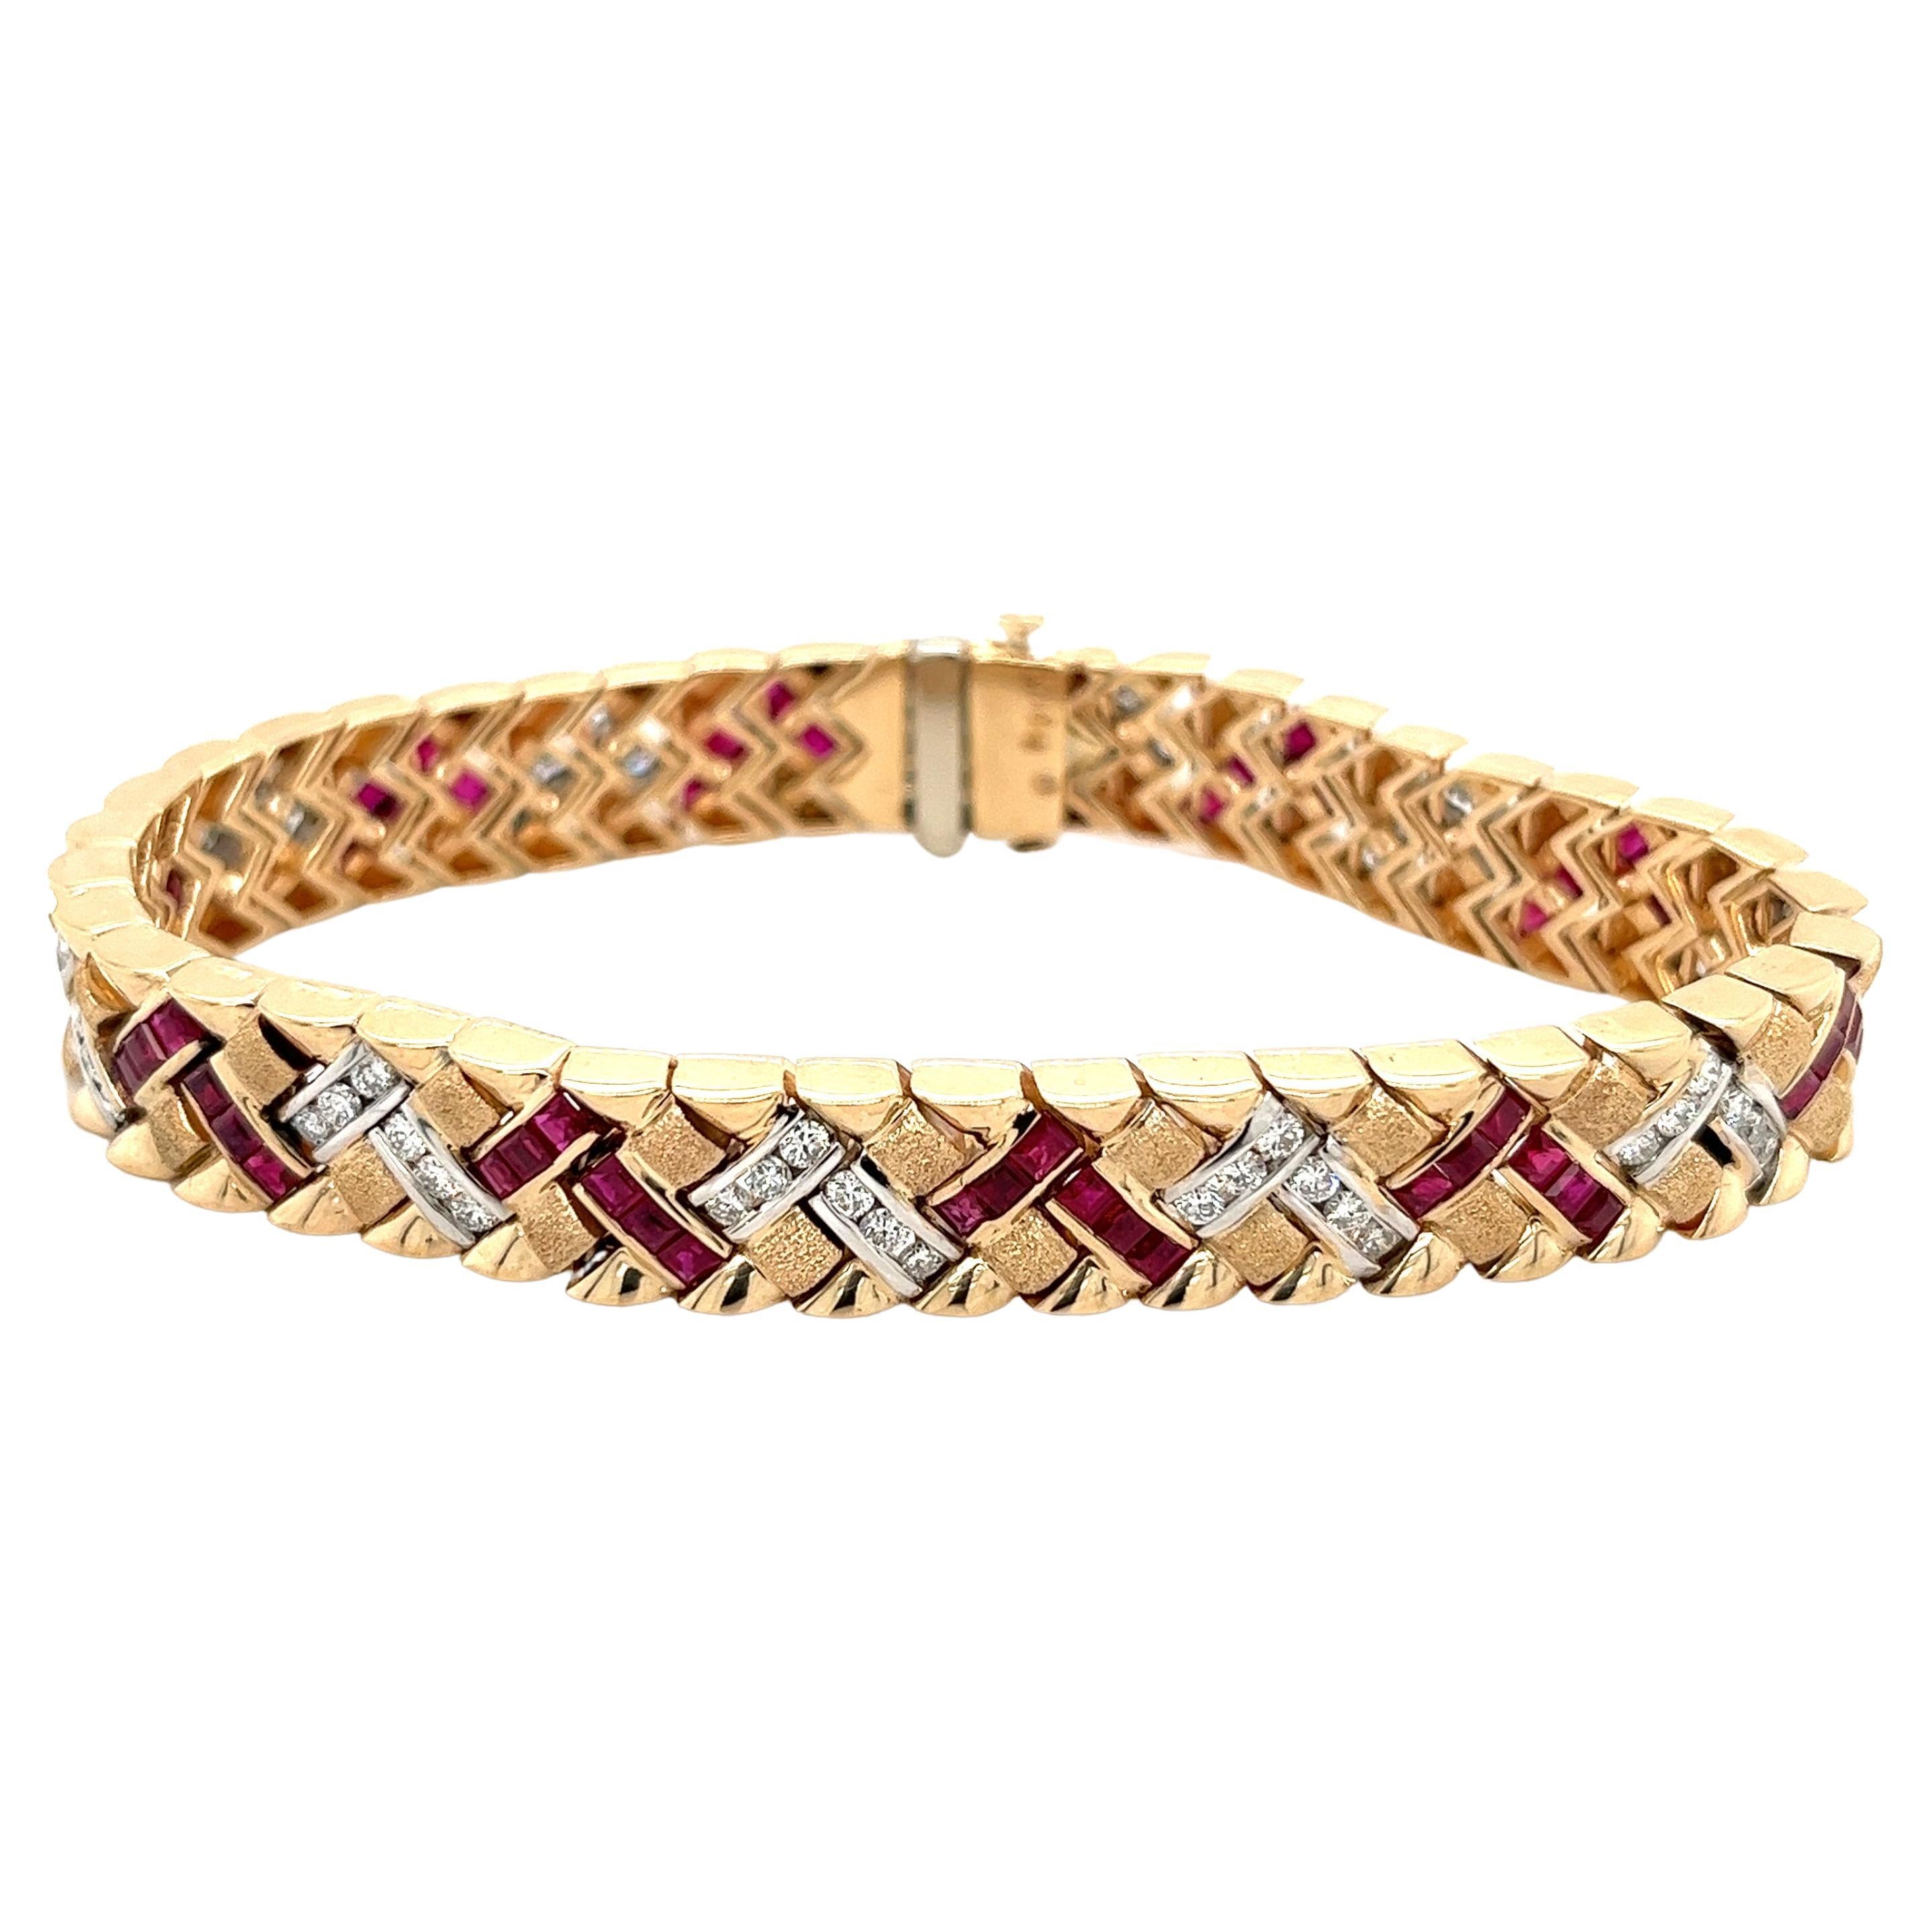 Vintage Art Deco inspiriertes Armband mit Rubin und Diamant in mattem Gold in 14k